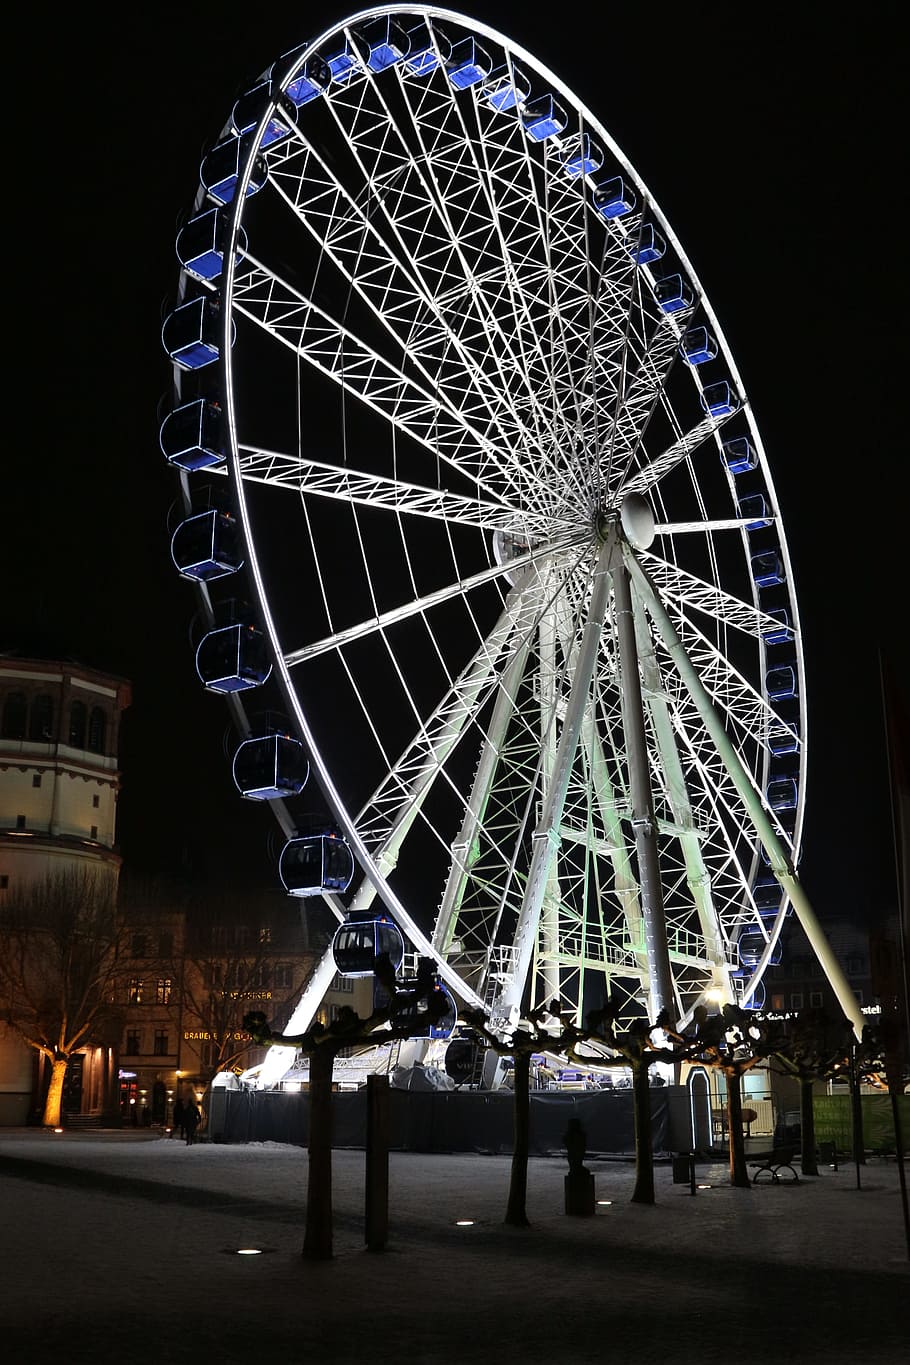 Roda gigante, Pessoas, Festival, Passeio, festival folclórico, plano de fundo, noite, lazer, Düsseldorf, parque de diversões